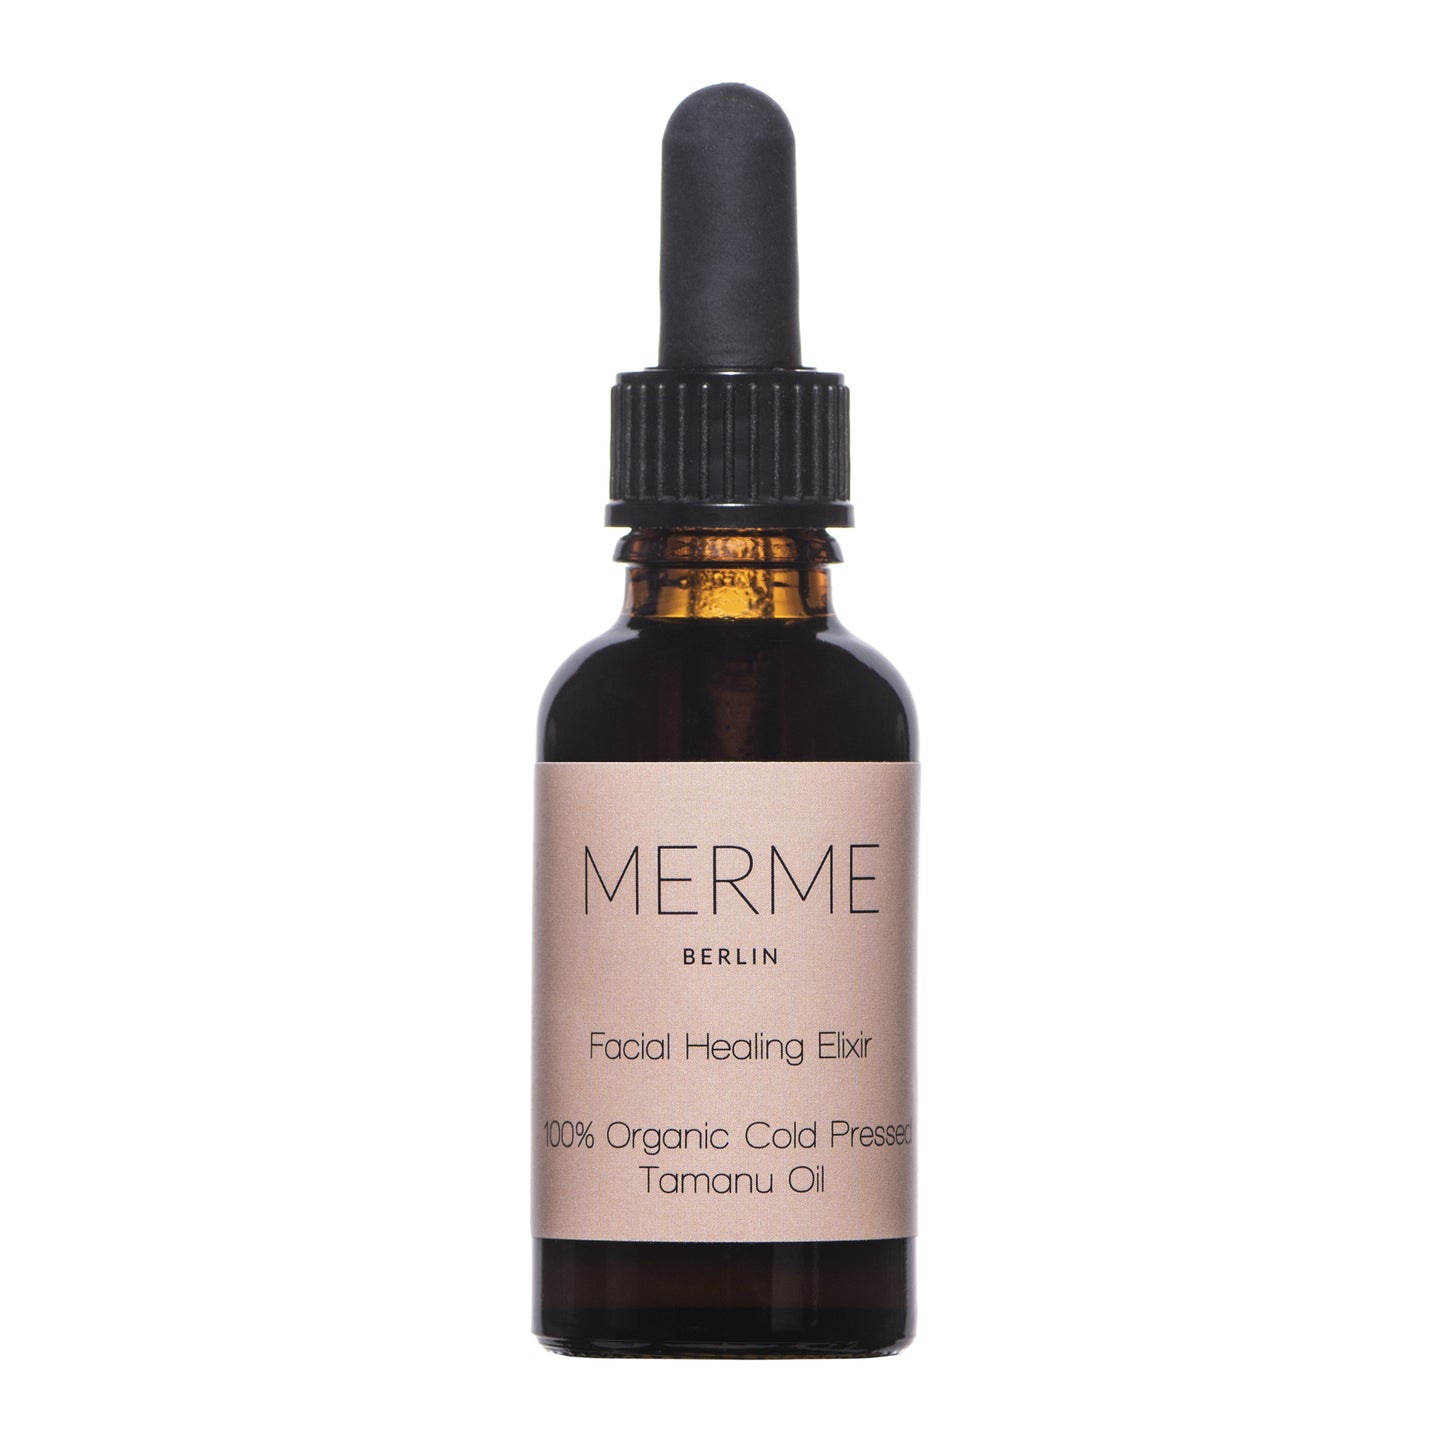 Merme - Facial Healing Elixir - Tamanu Oil 30ml